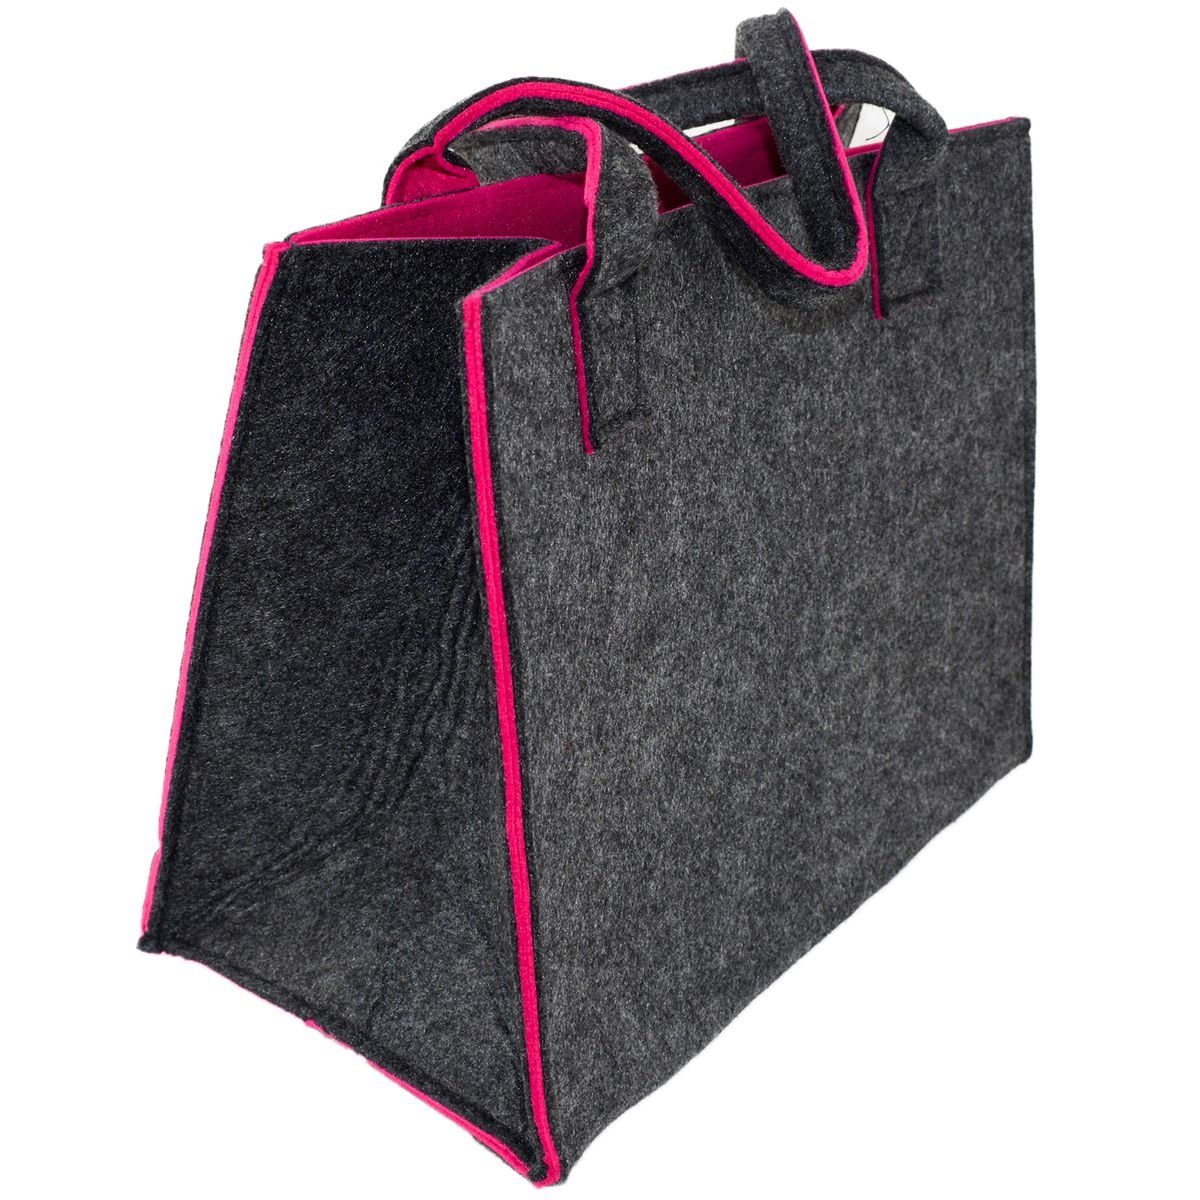 Tragetasche Pink Shop x ca.35 Marabellas Tragetasche Einkauftasche x 28cm Filz mit 20 Farbkontrast, faltbar